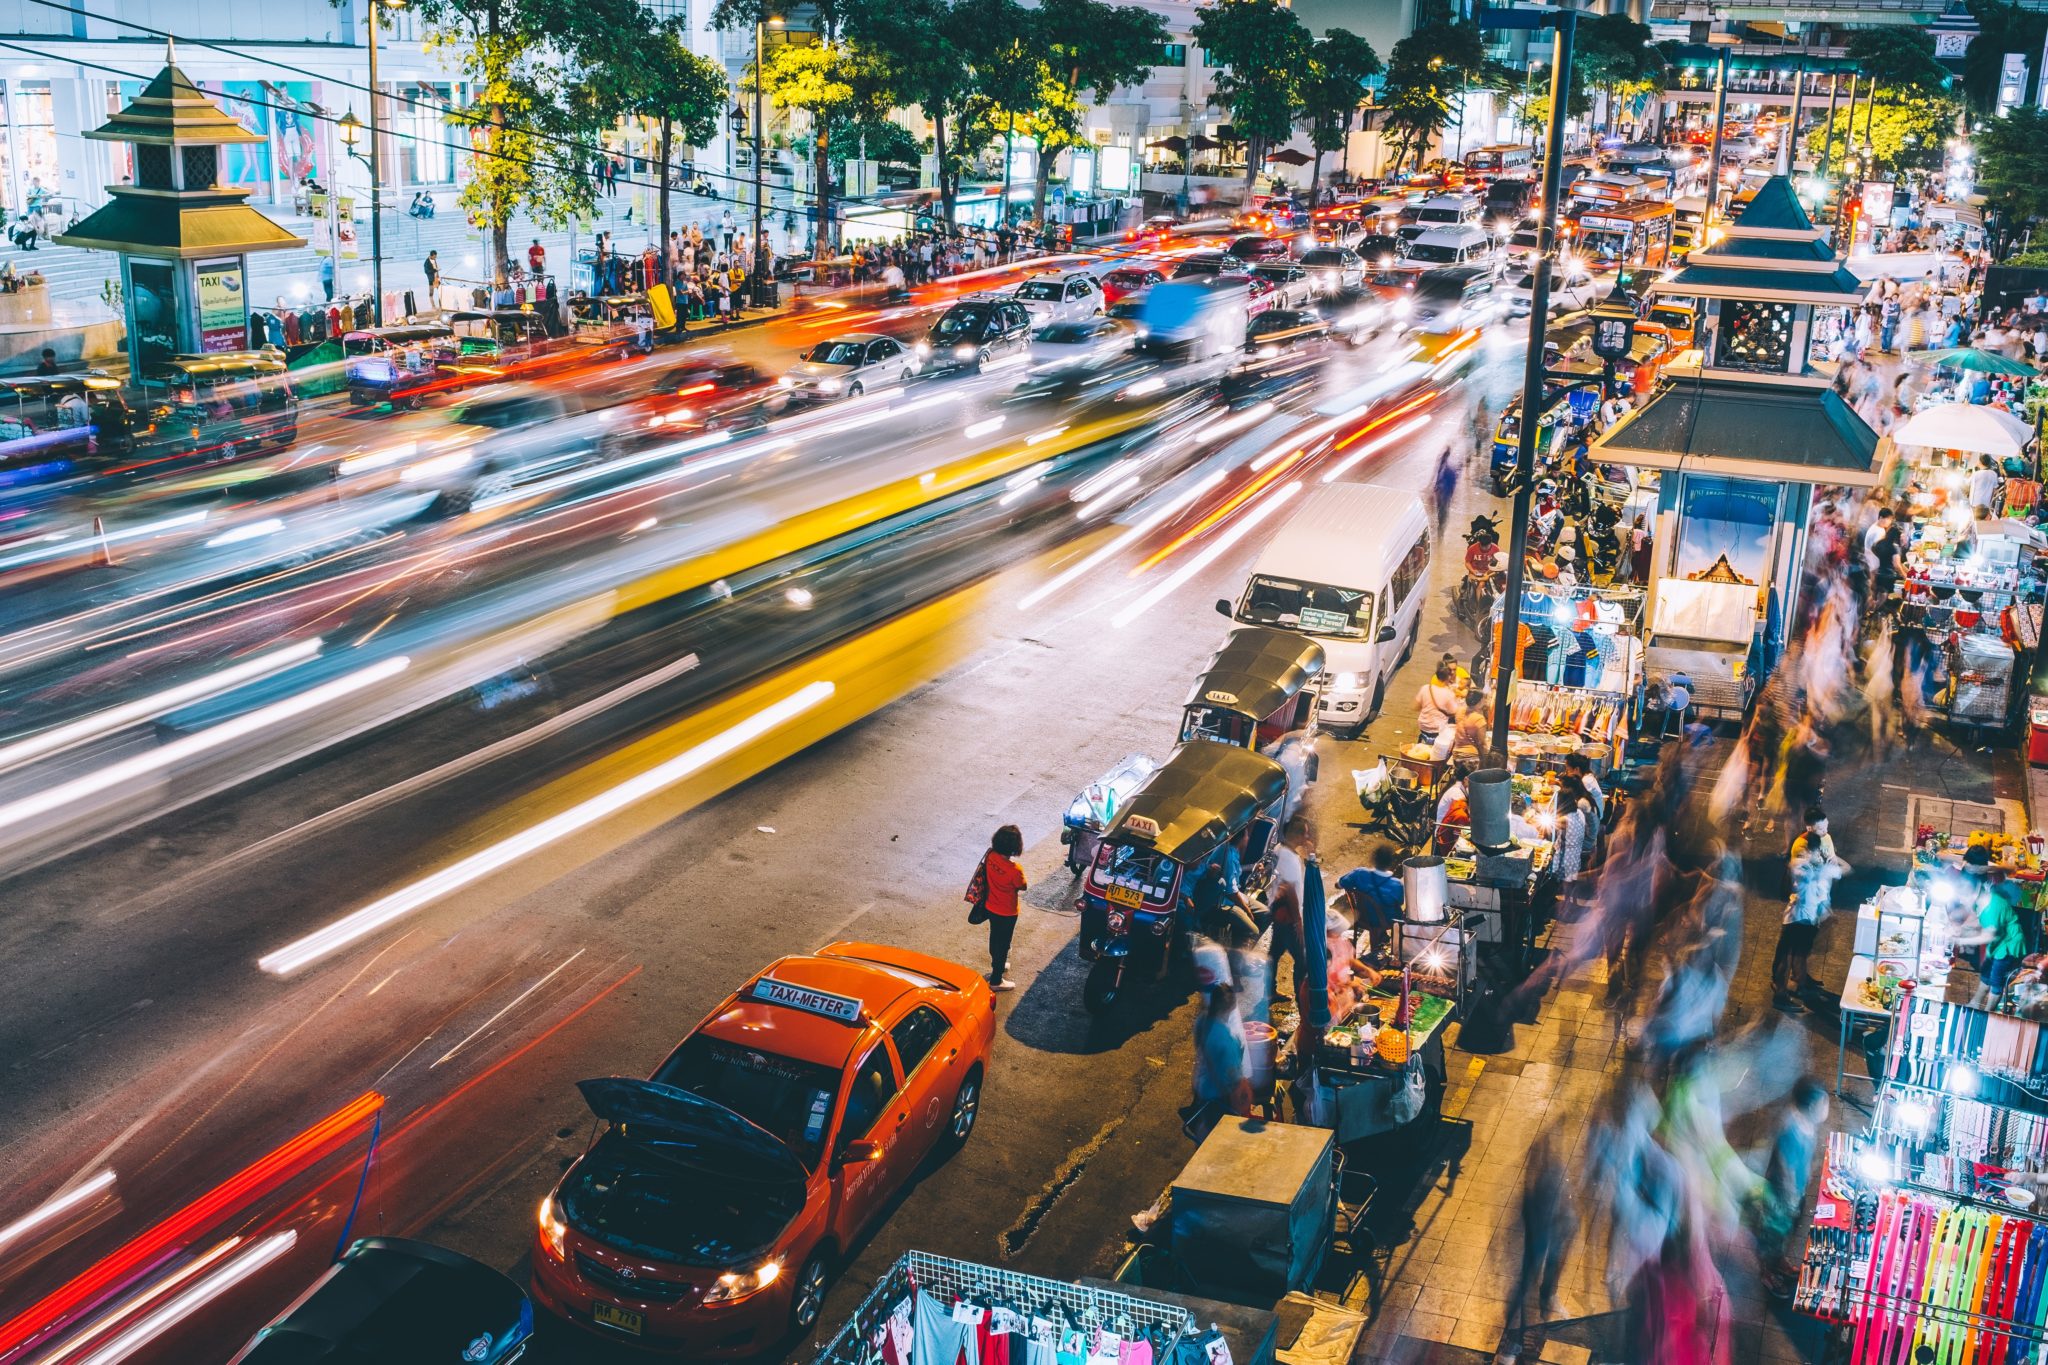 Ruch uliczny w Bangkoku nocą, nocny market, dużo taksówek, tuk tuków, przechodniów, jedzenie uliczne, stragany